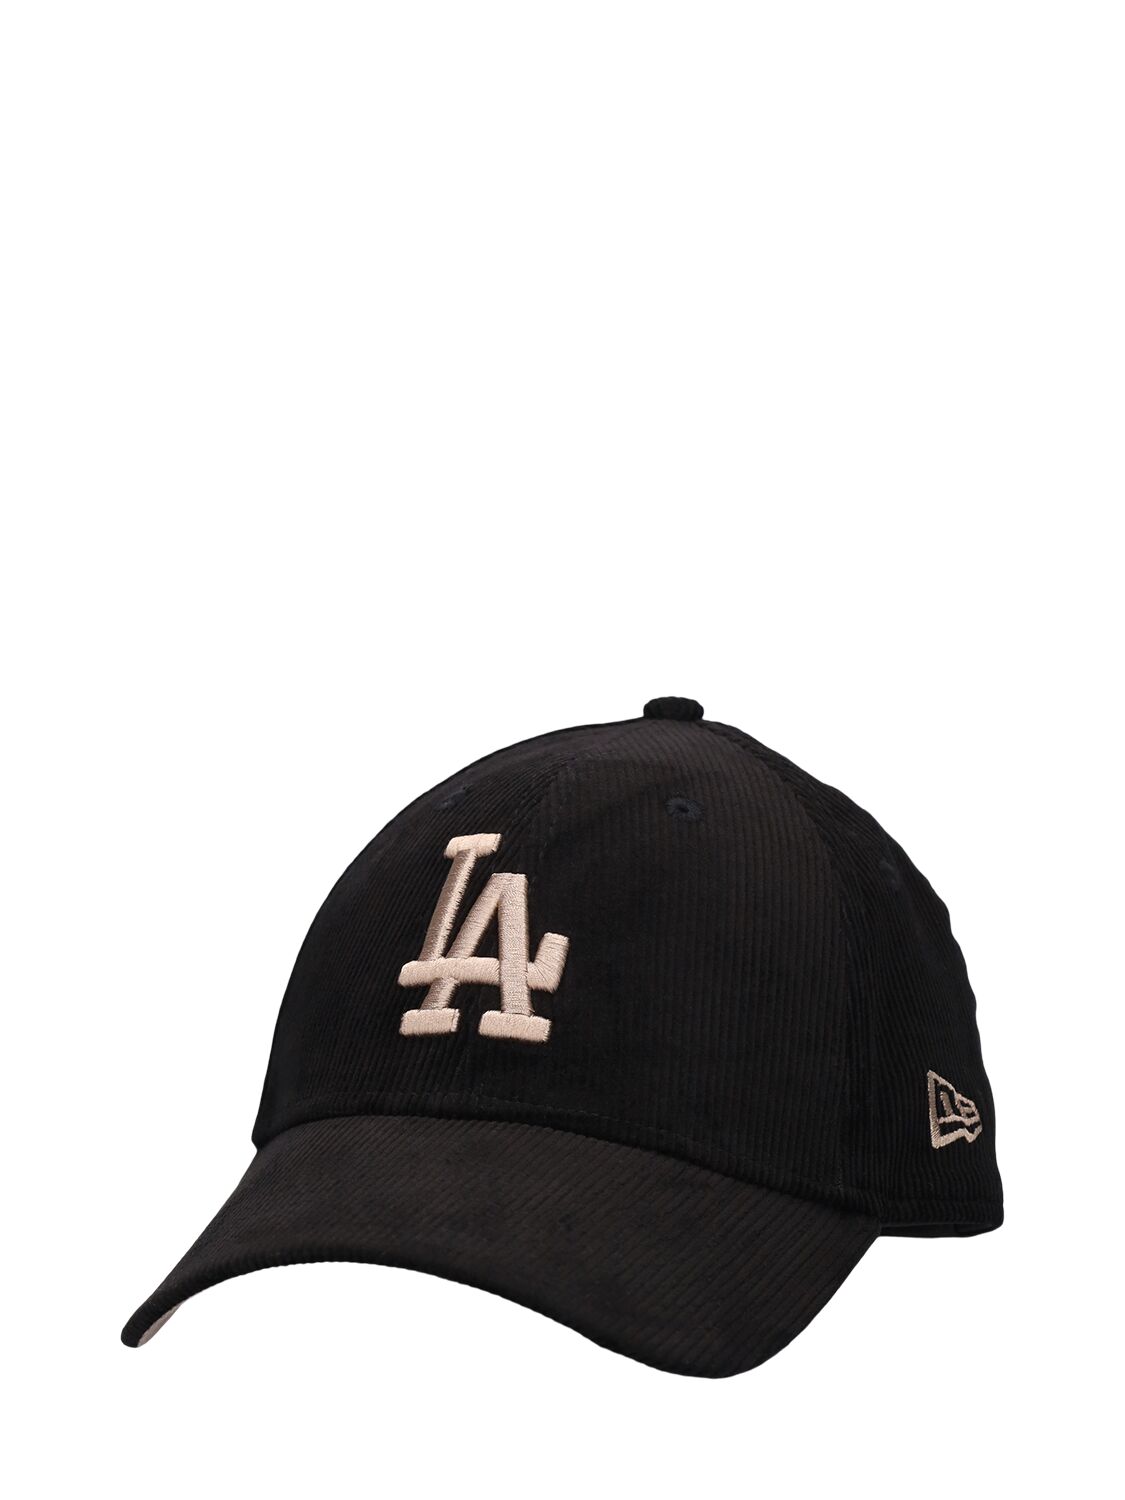 LA DODGERS 9FORTY棒球帽